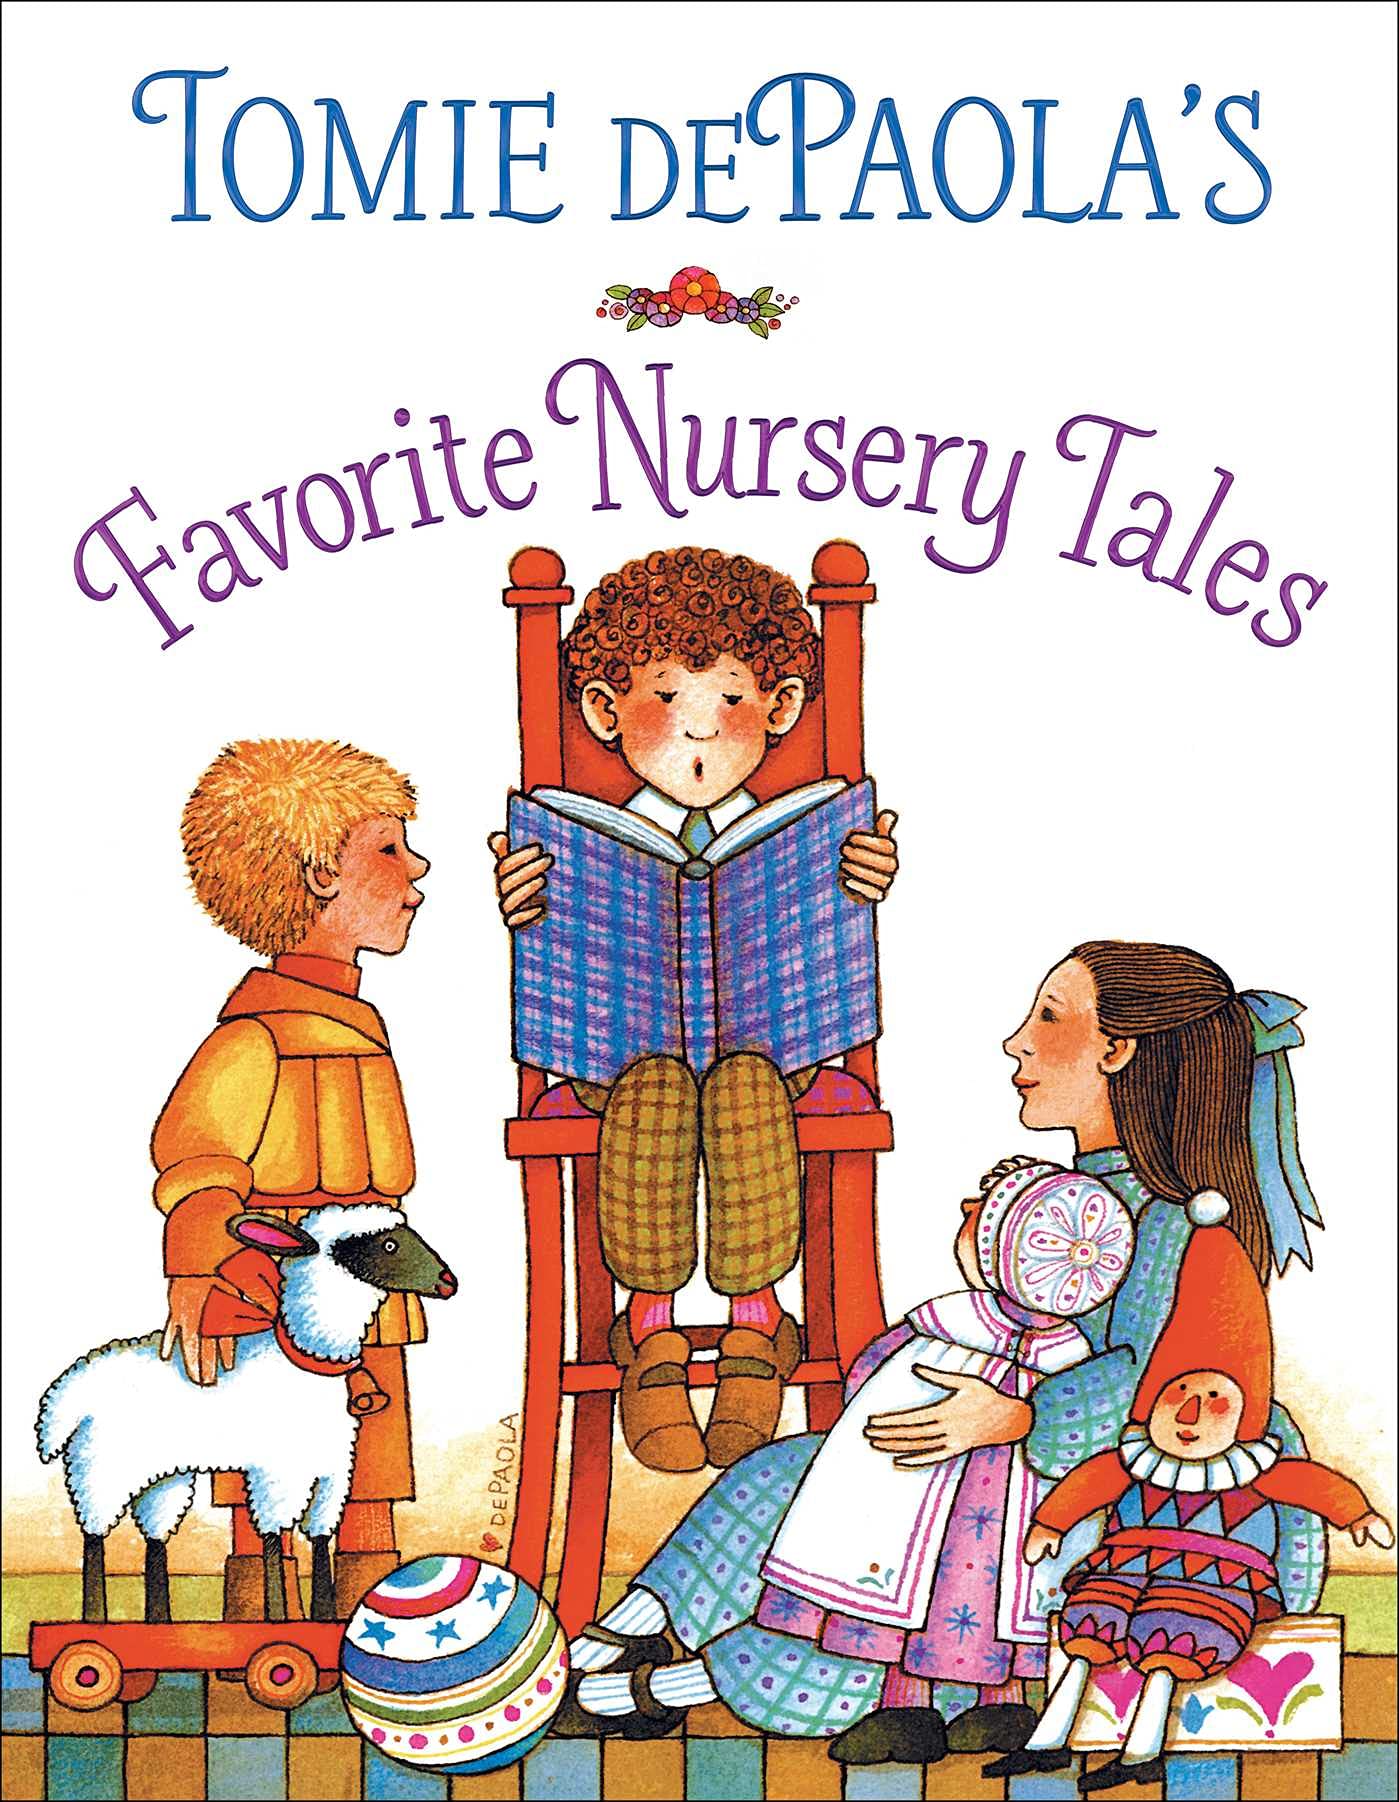 Tomie dePaola’s Favorite Nursery Tales